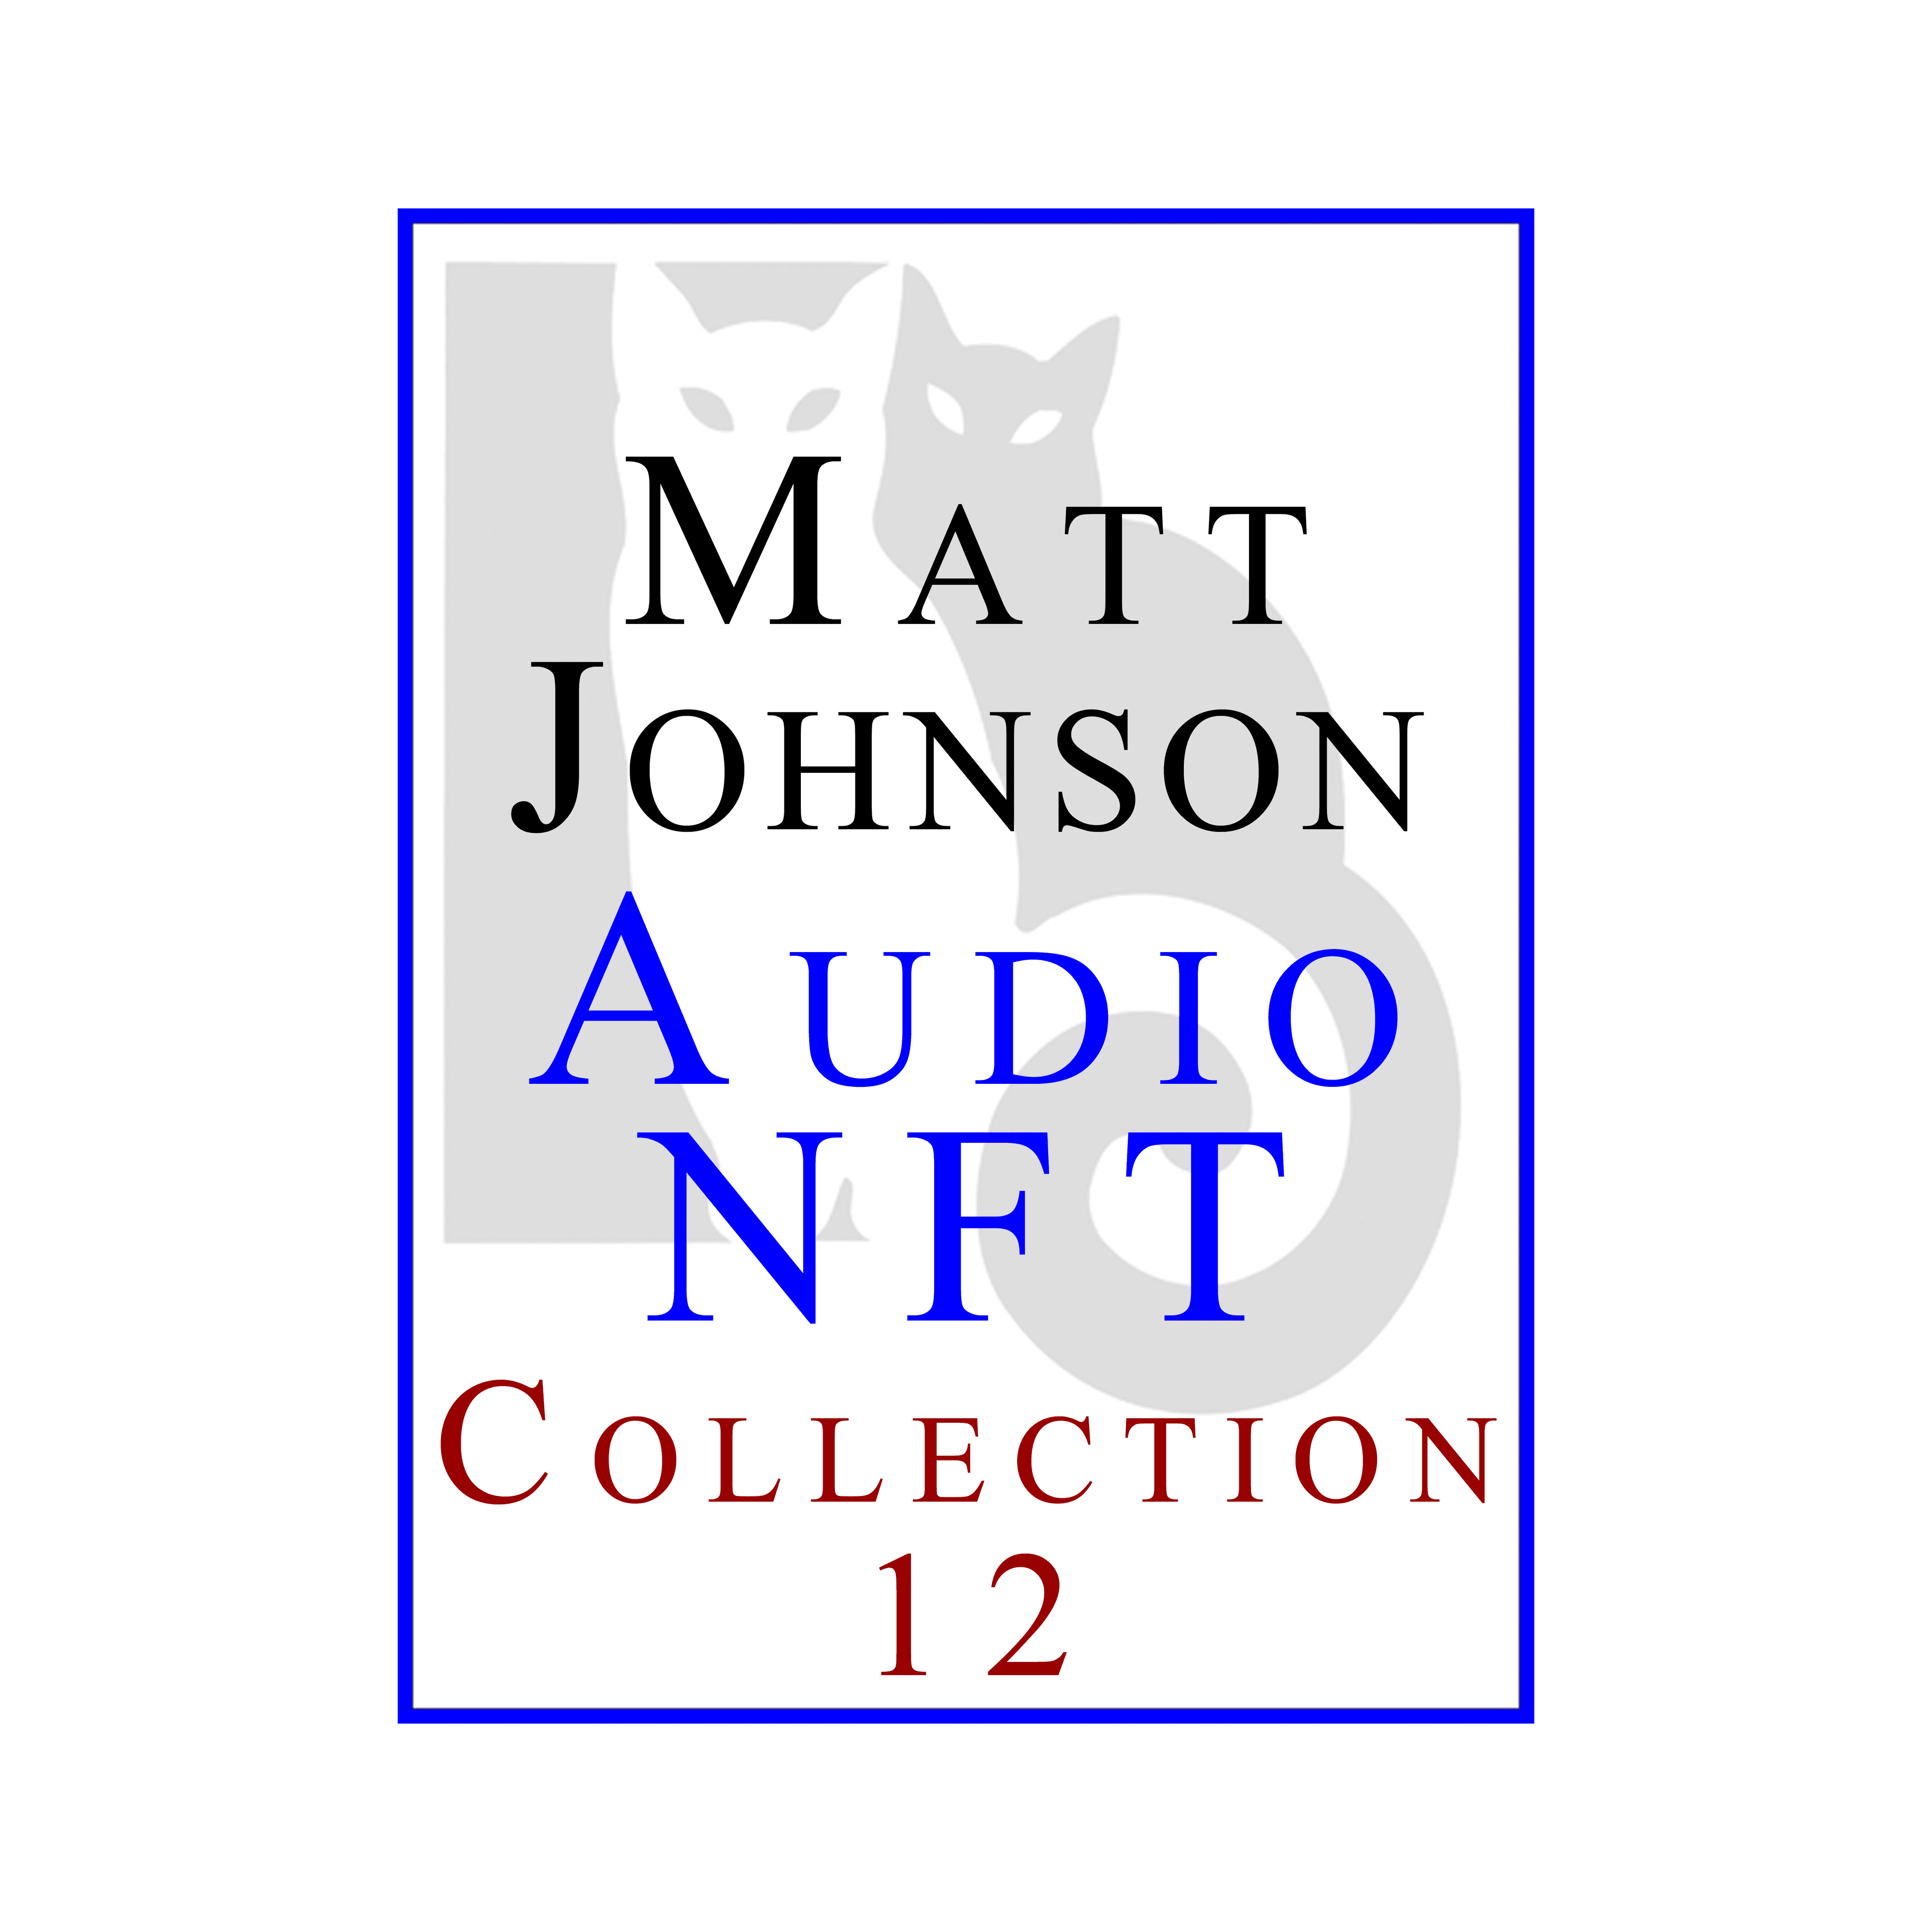 Matt Johnson Audio NFT ~ Collection 12